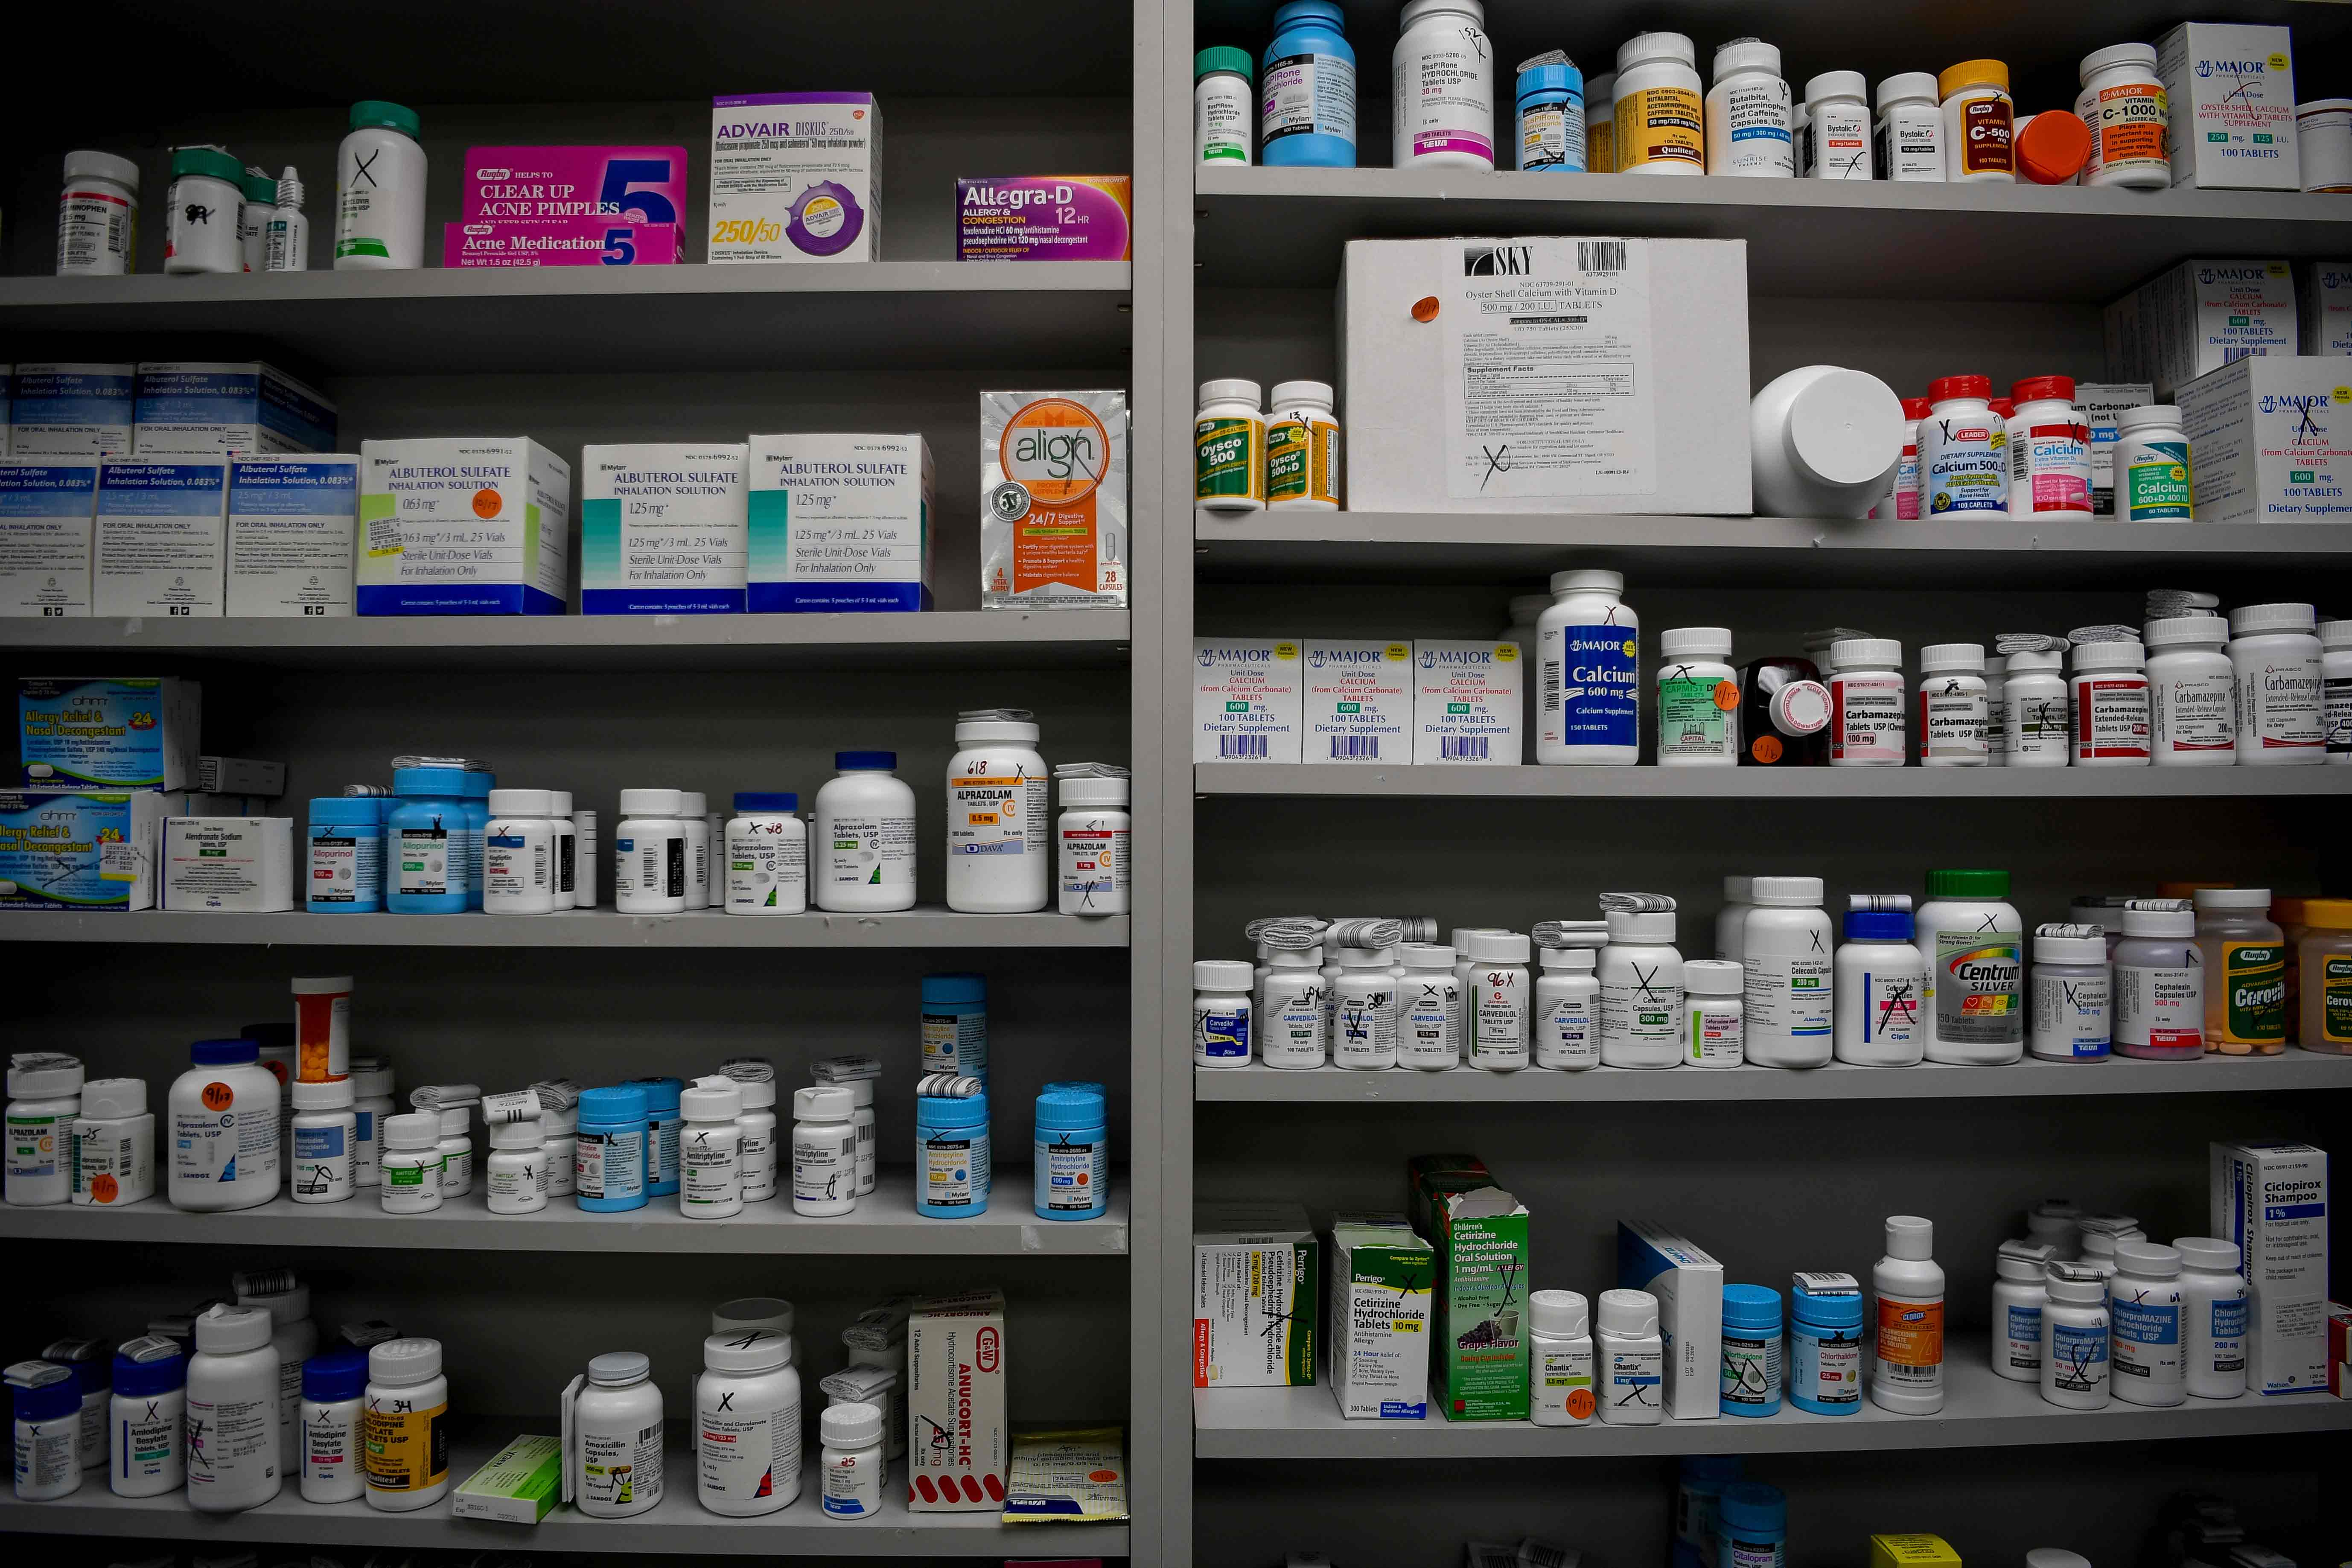 Стоимость Таблеток В Аптеках